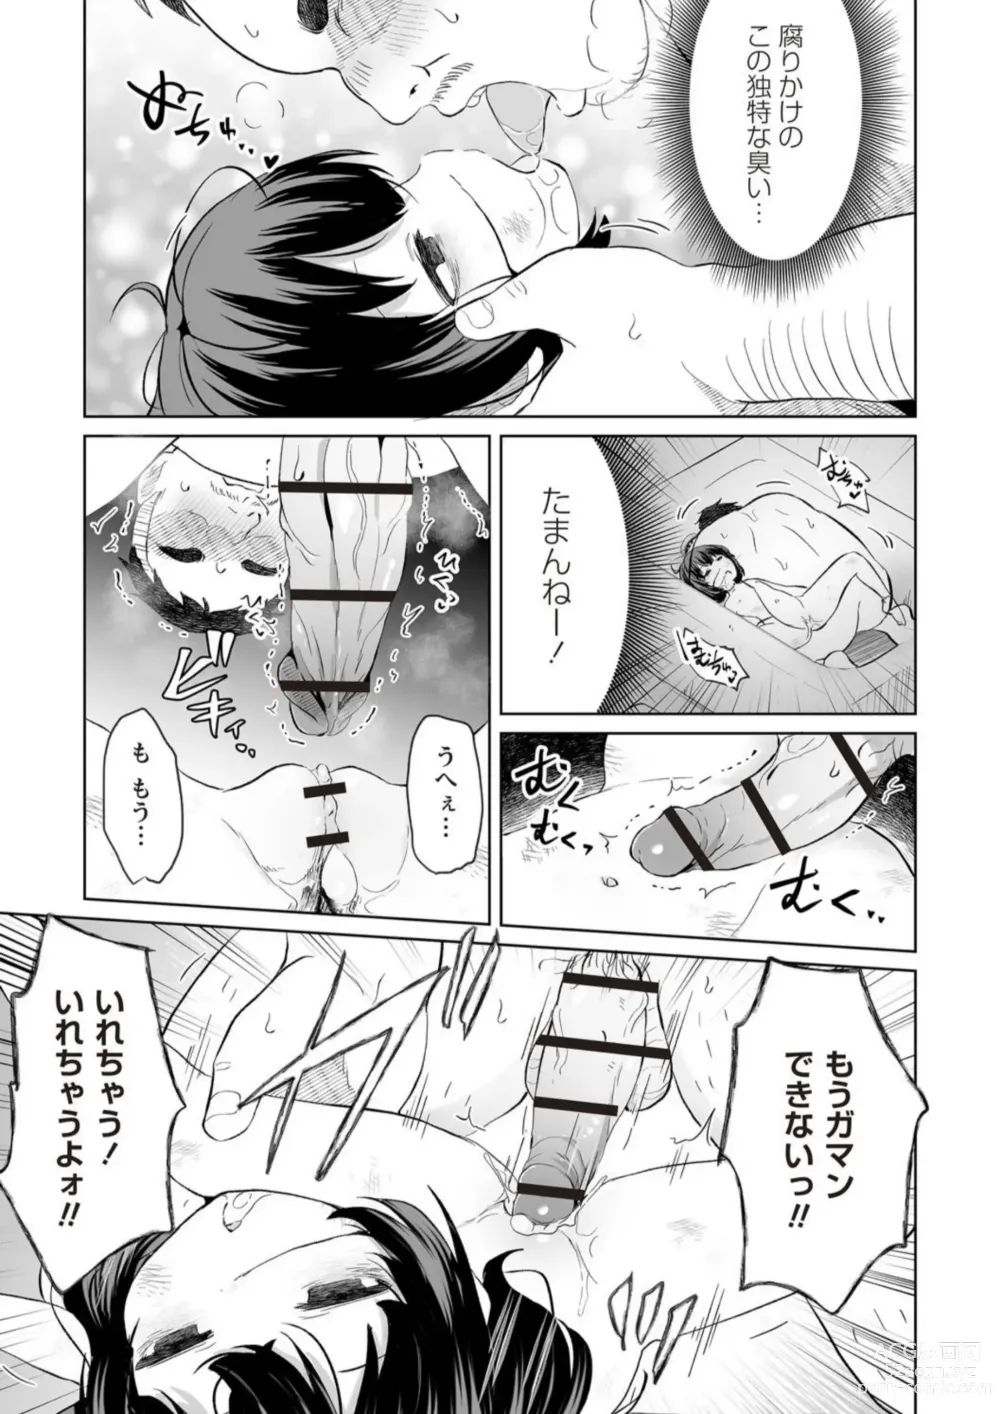 Page 7 of manga Chousoku Haisou! Necro Prime